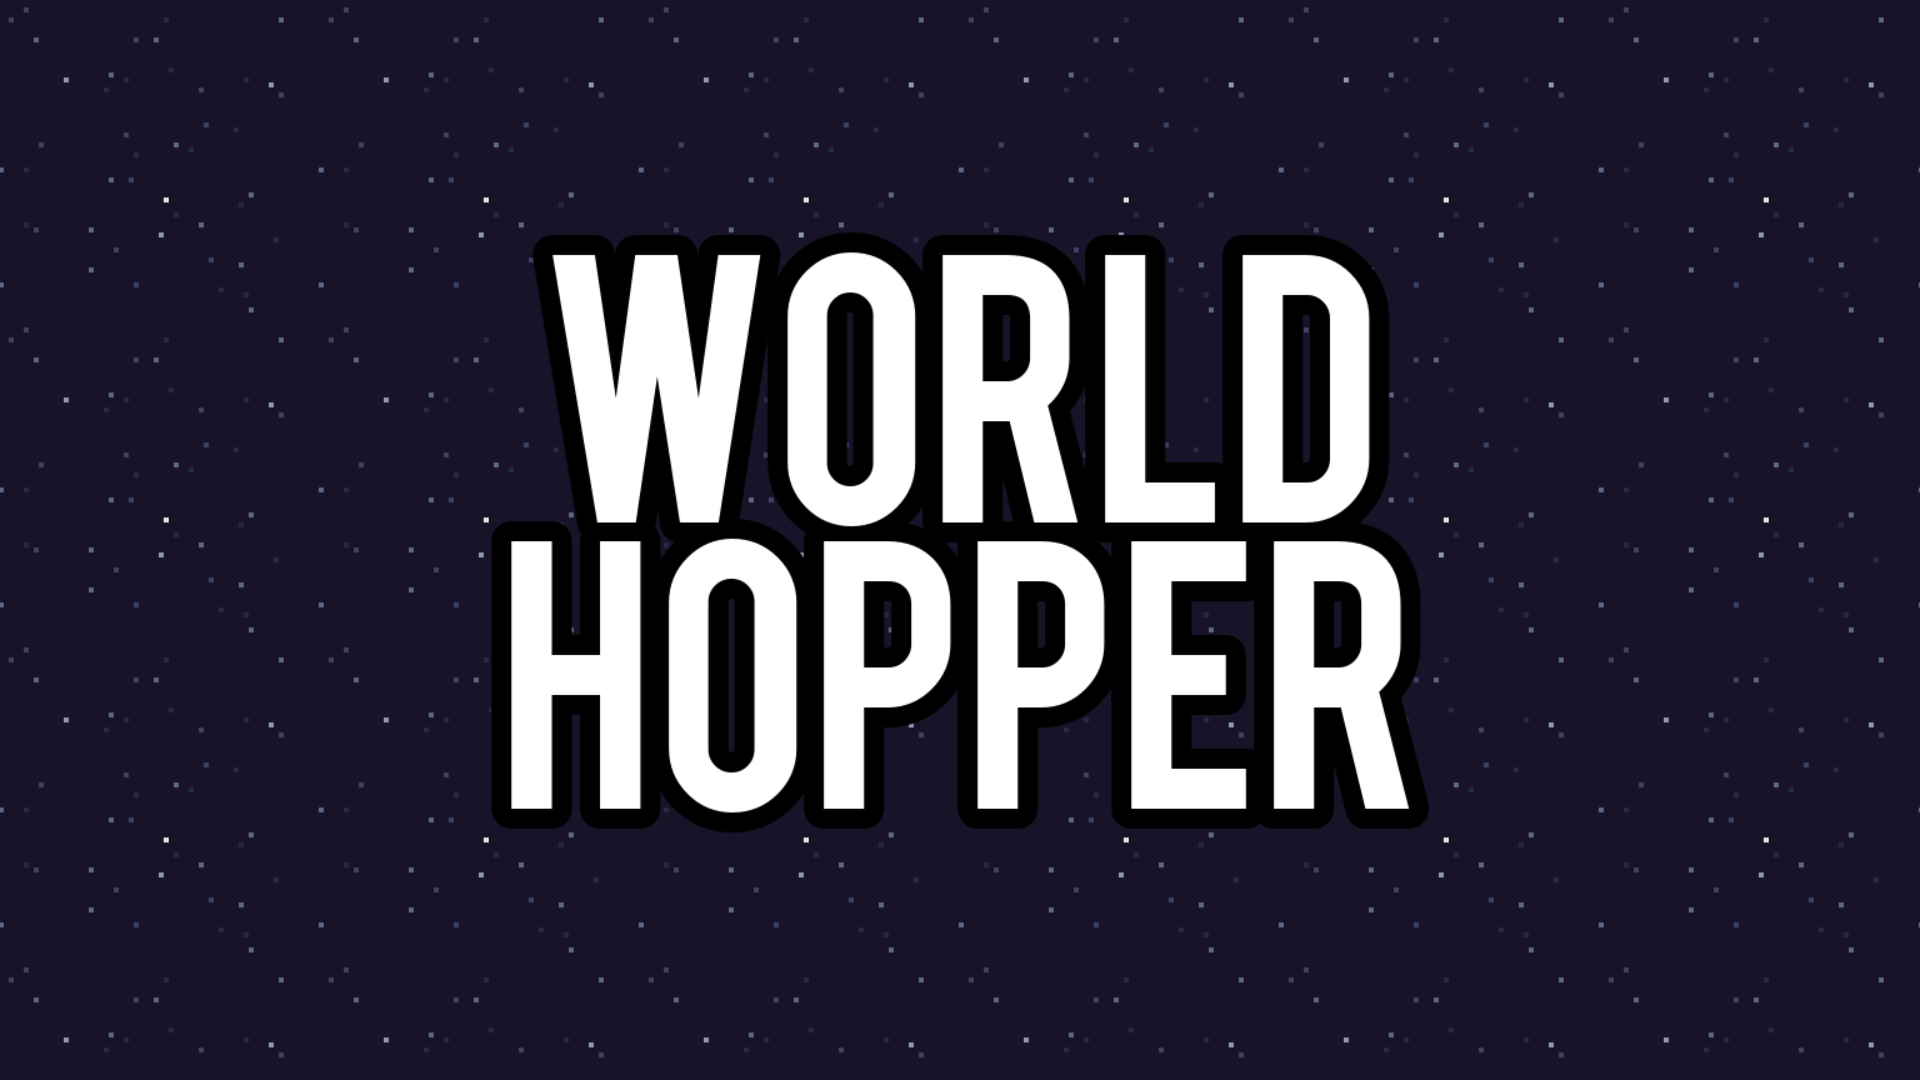 World Hopper